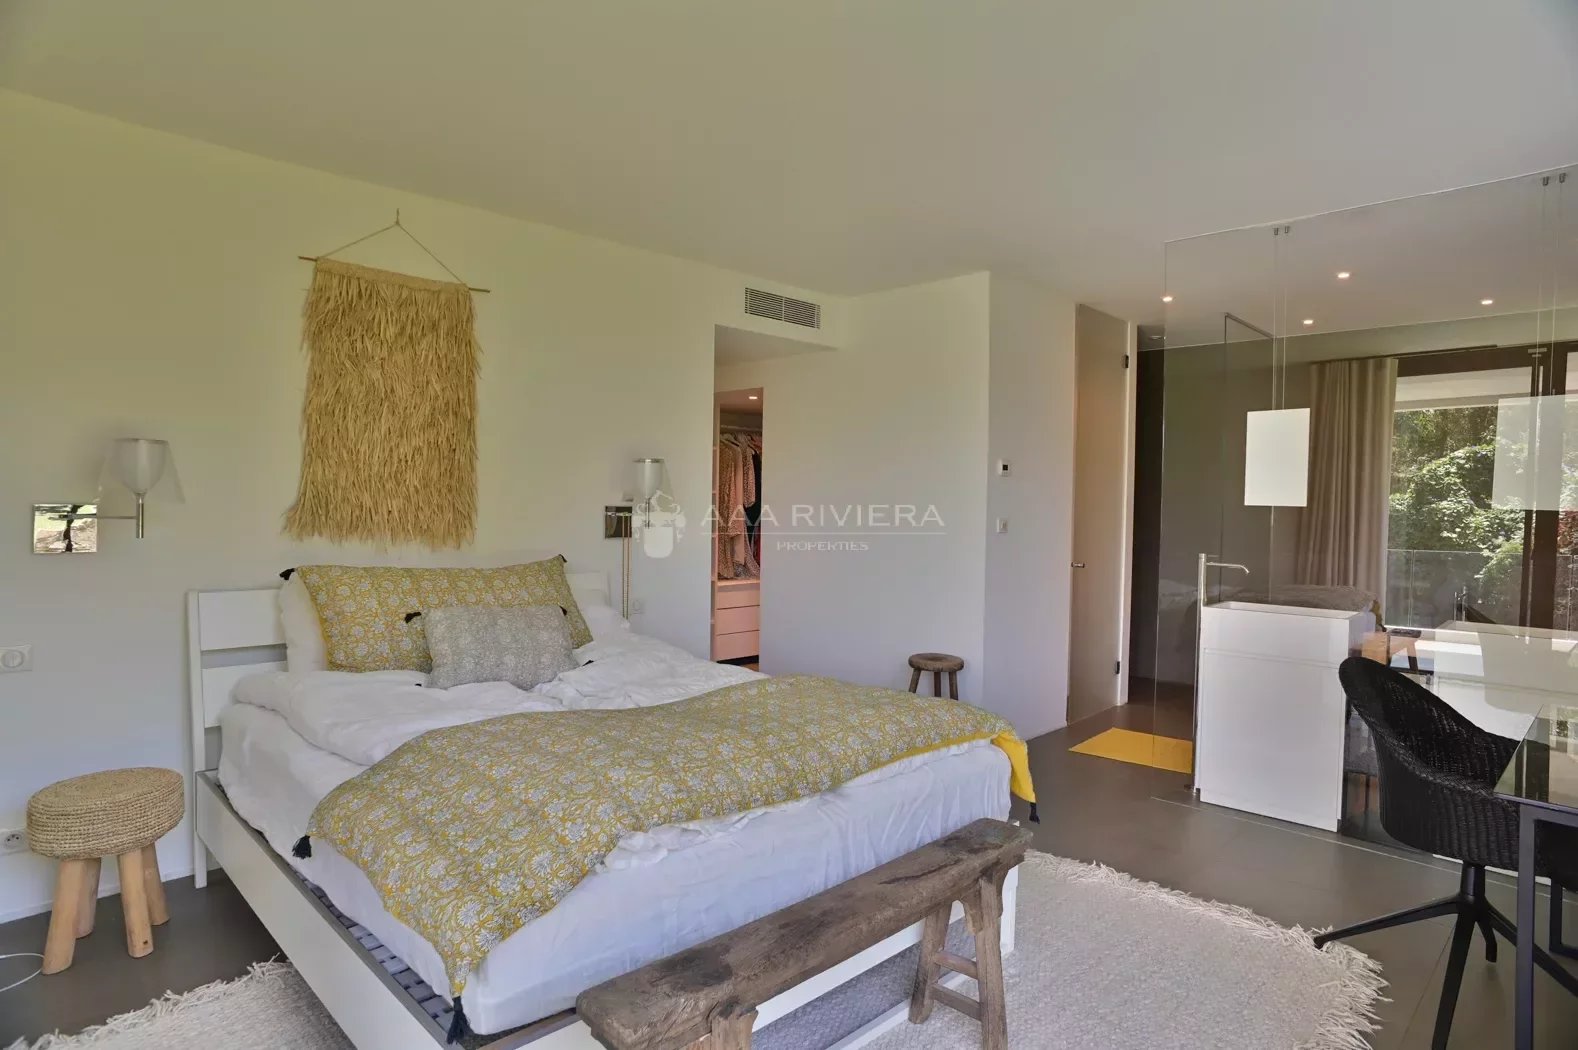 EXCLUSIVITE - GOLFE-JUAN - Magnifique villa de style Californienne avec une belle vue mer